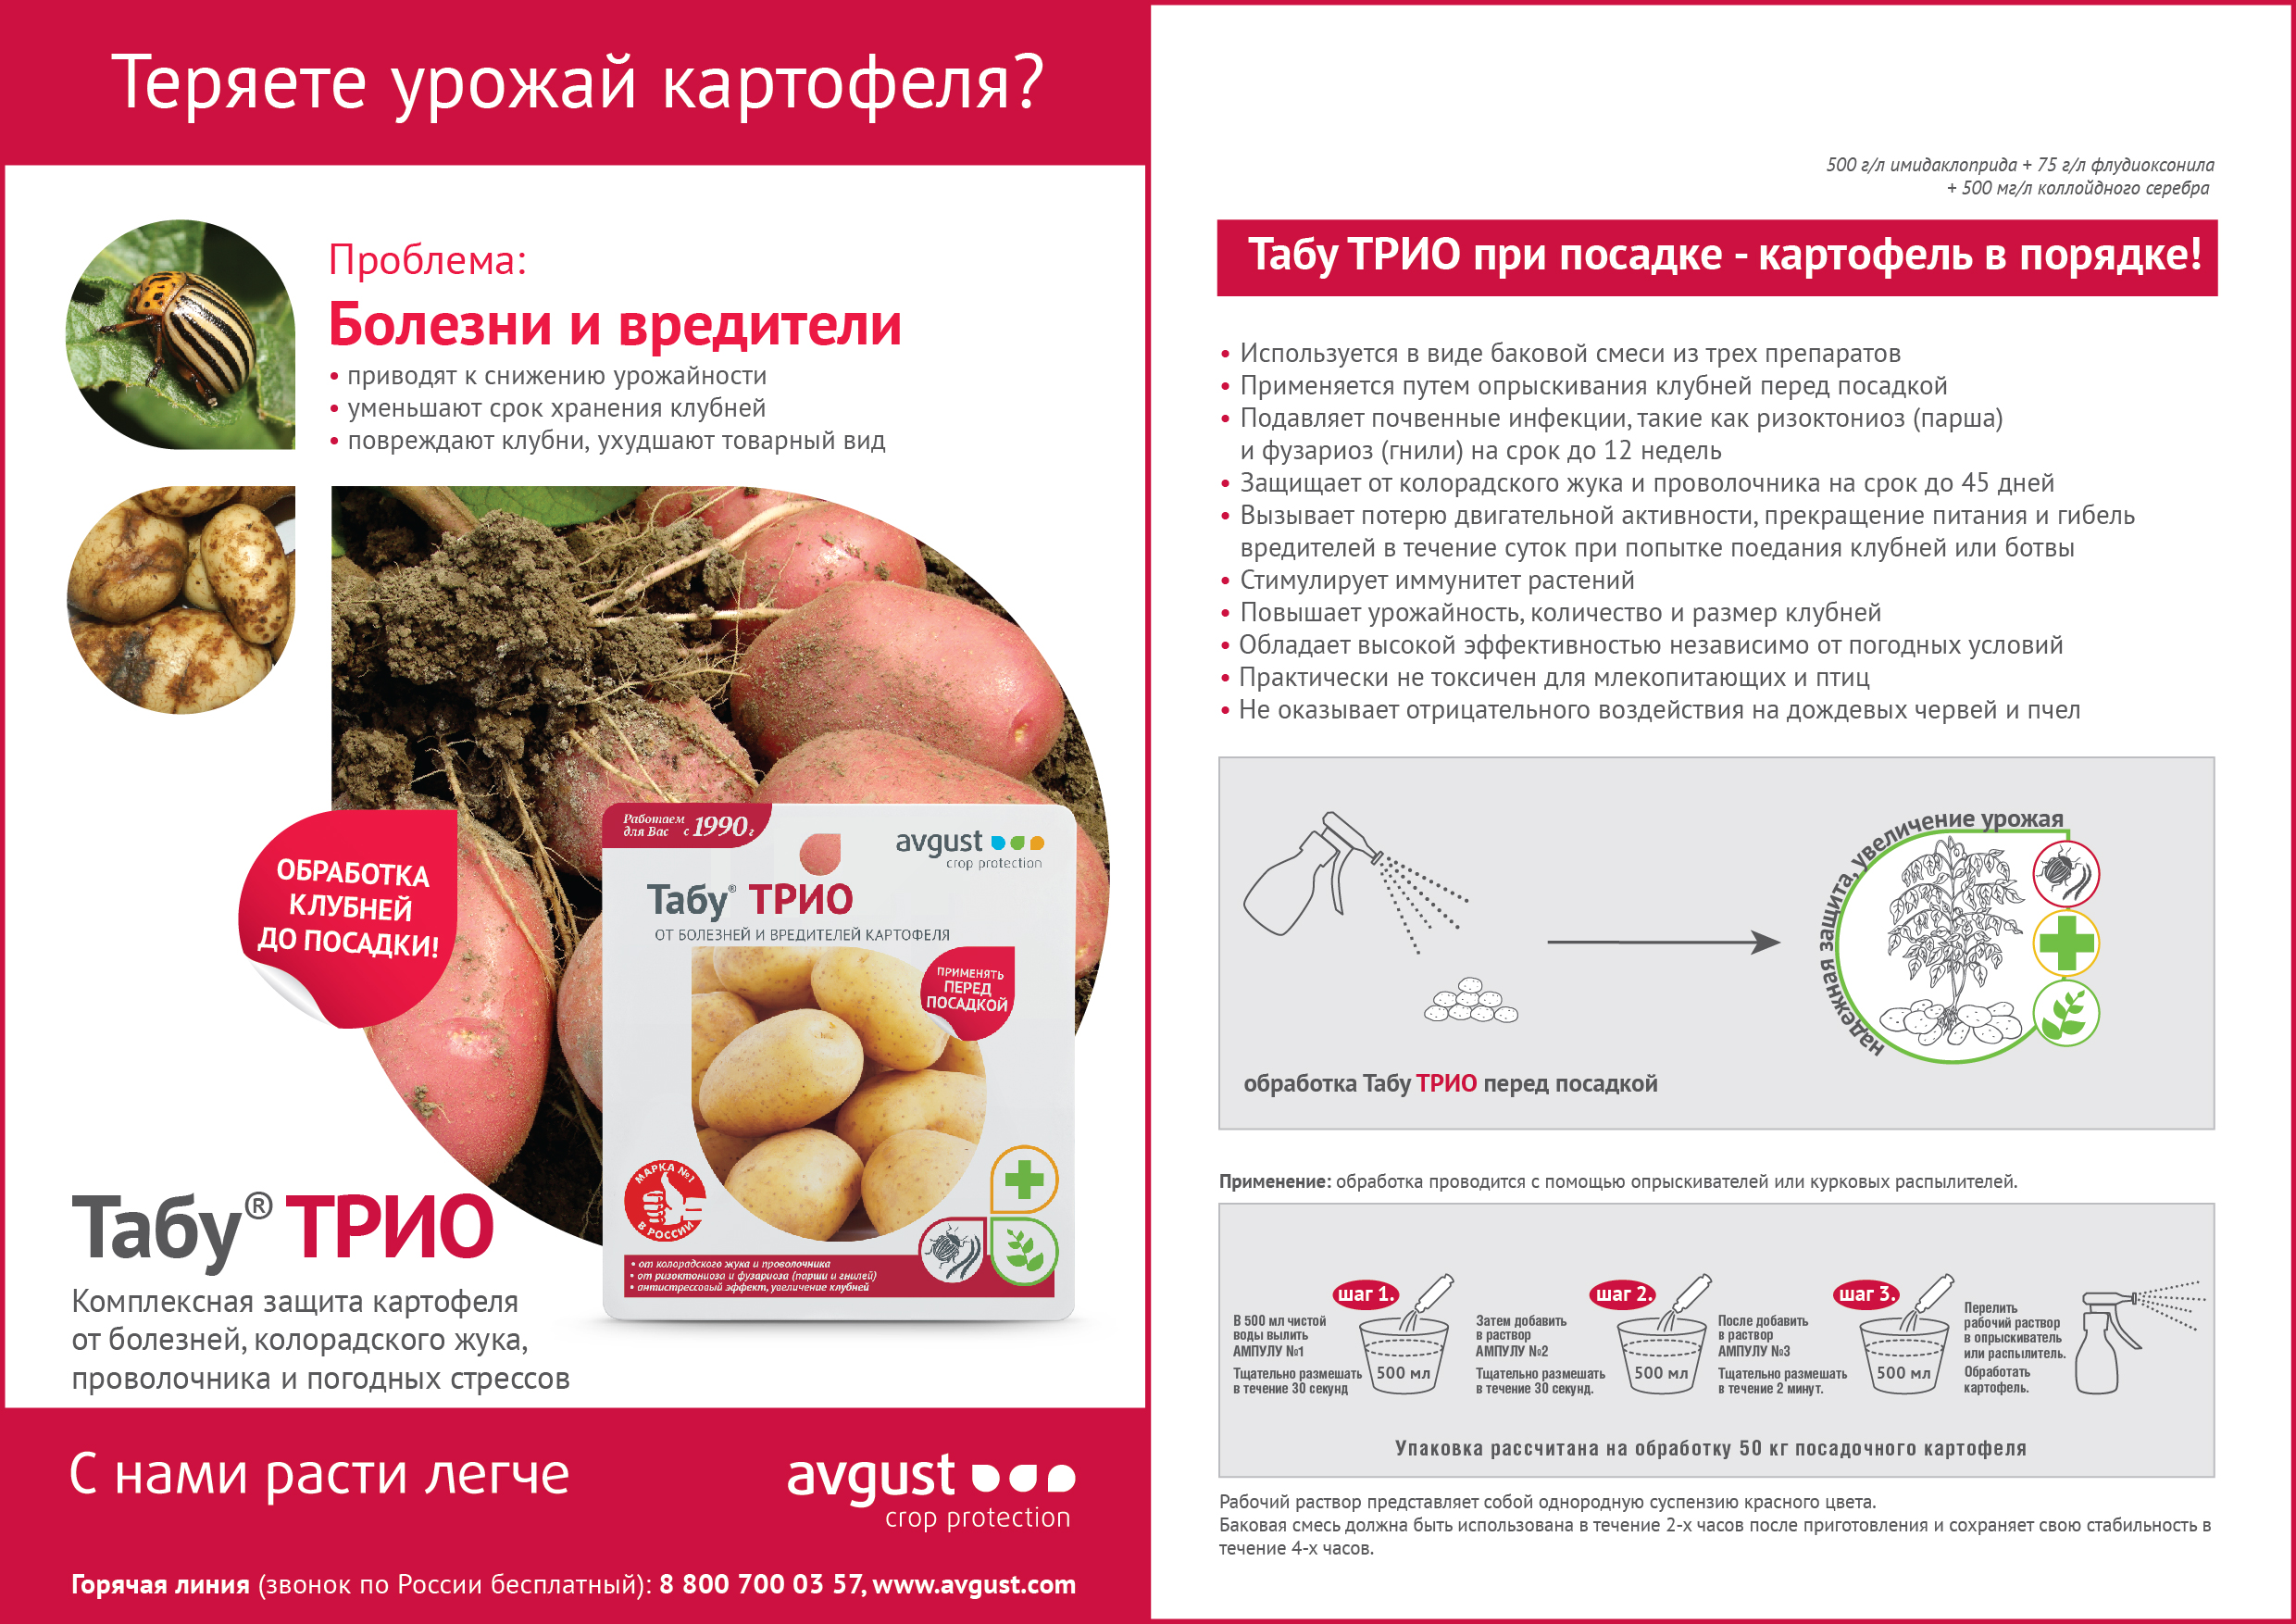 Табу для обработки картофеля: инструкция по применению препарата